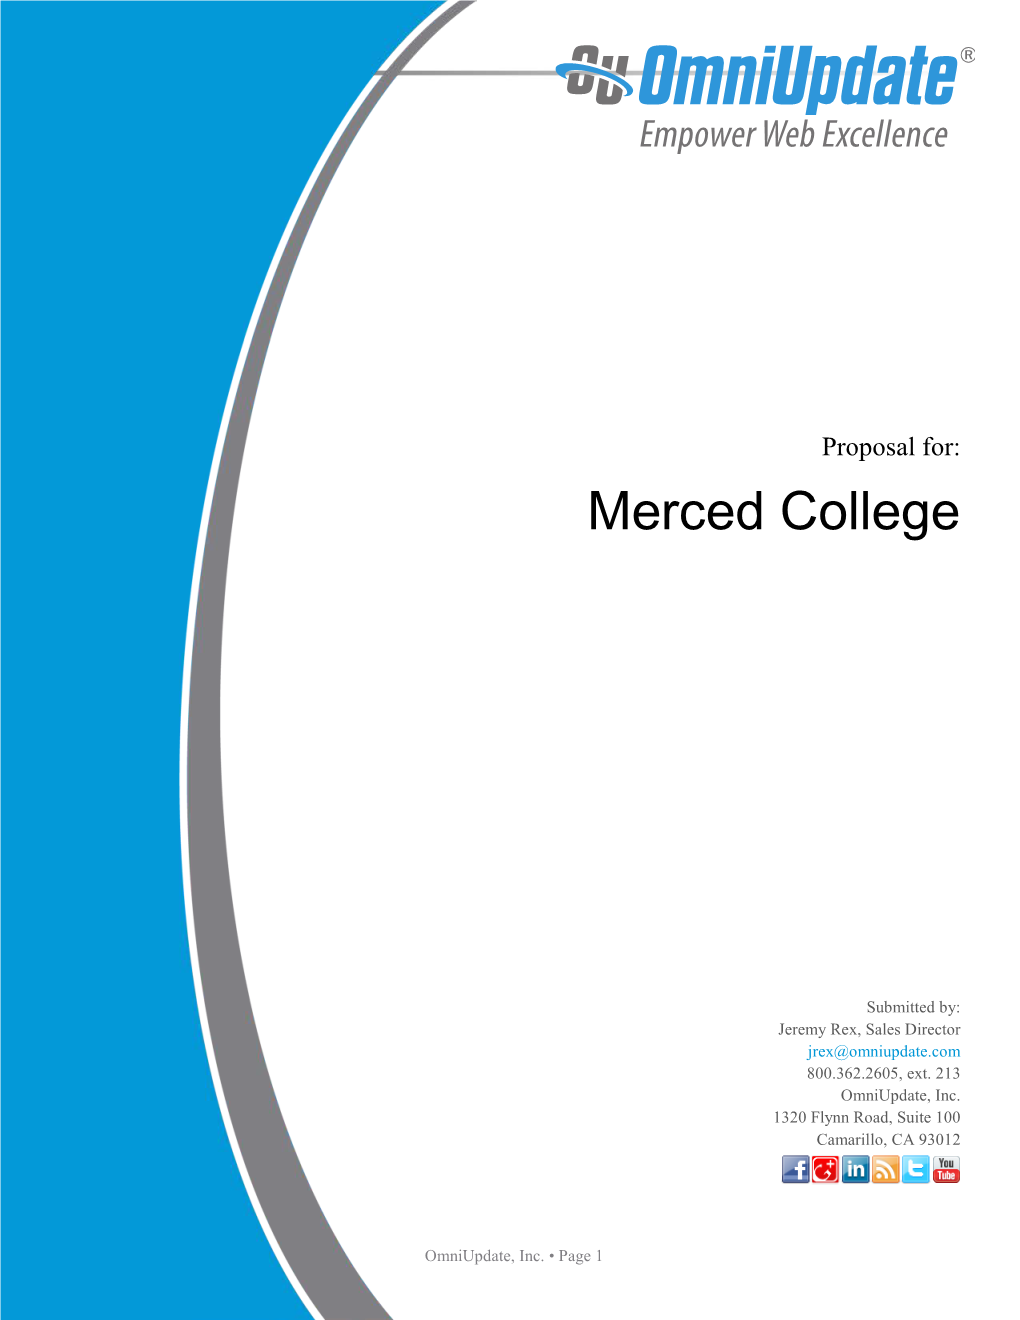 Merced-College-Omniupdate-Proposal